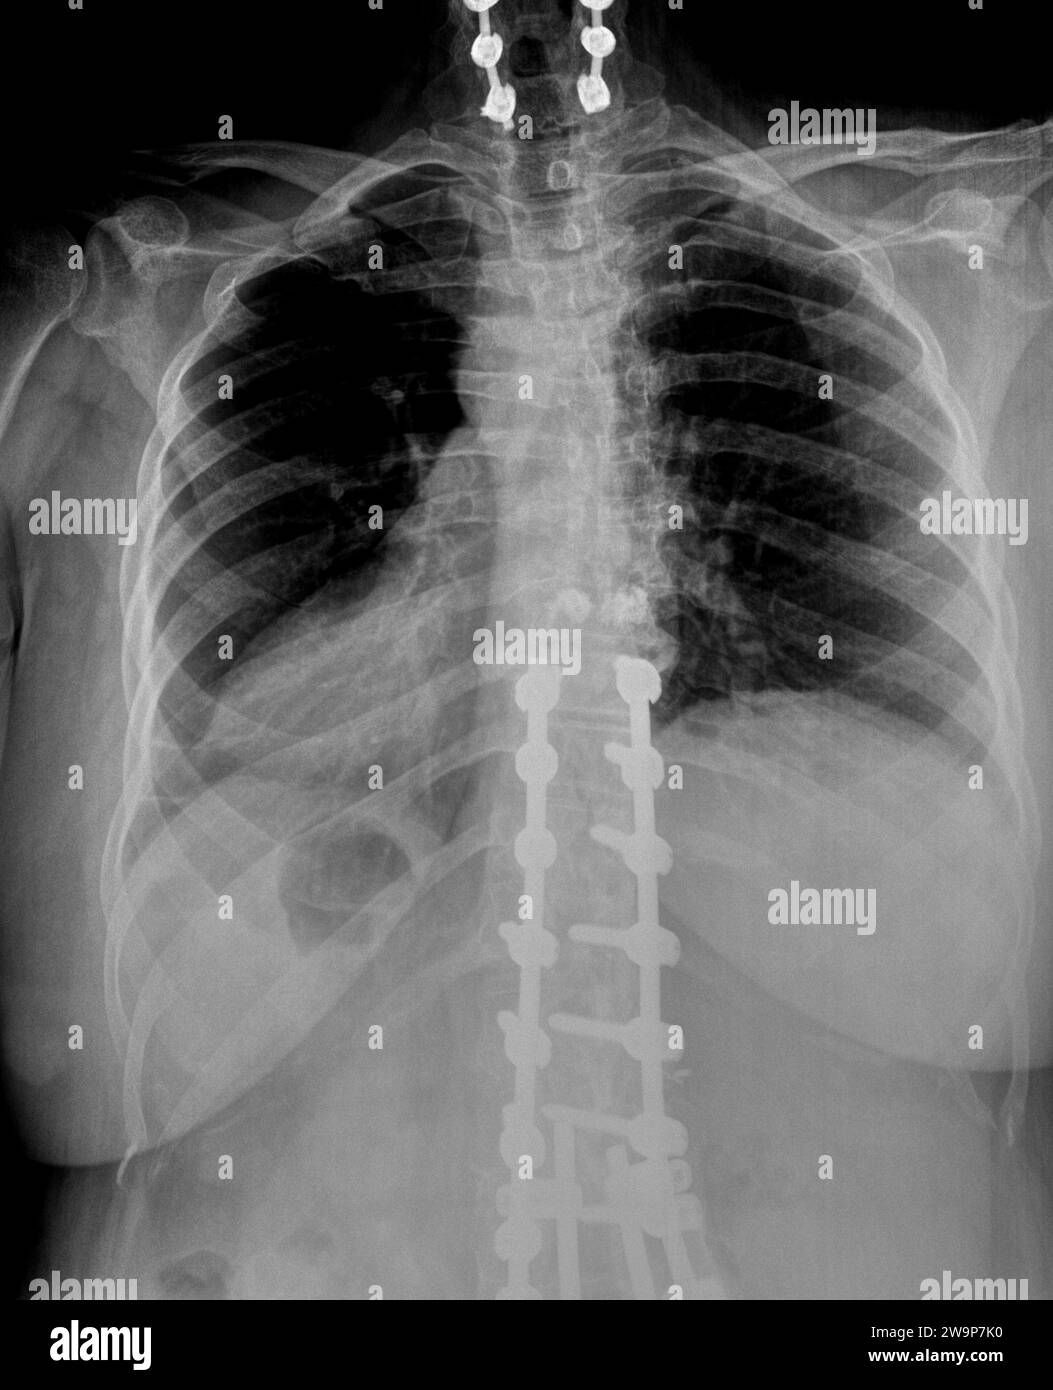 Radiographie ou radiographie d'une partie médiane du dos thoracique et des vertèbres cervicales vue postérieure antérieure montrant un support chirurgical pour aider à stabiliser les patients Banque D'Images